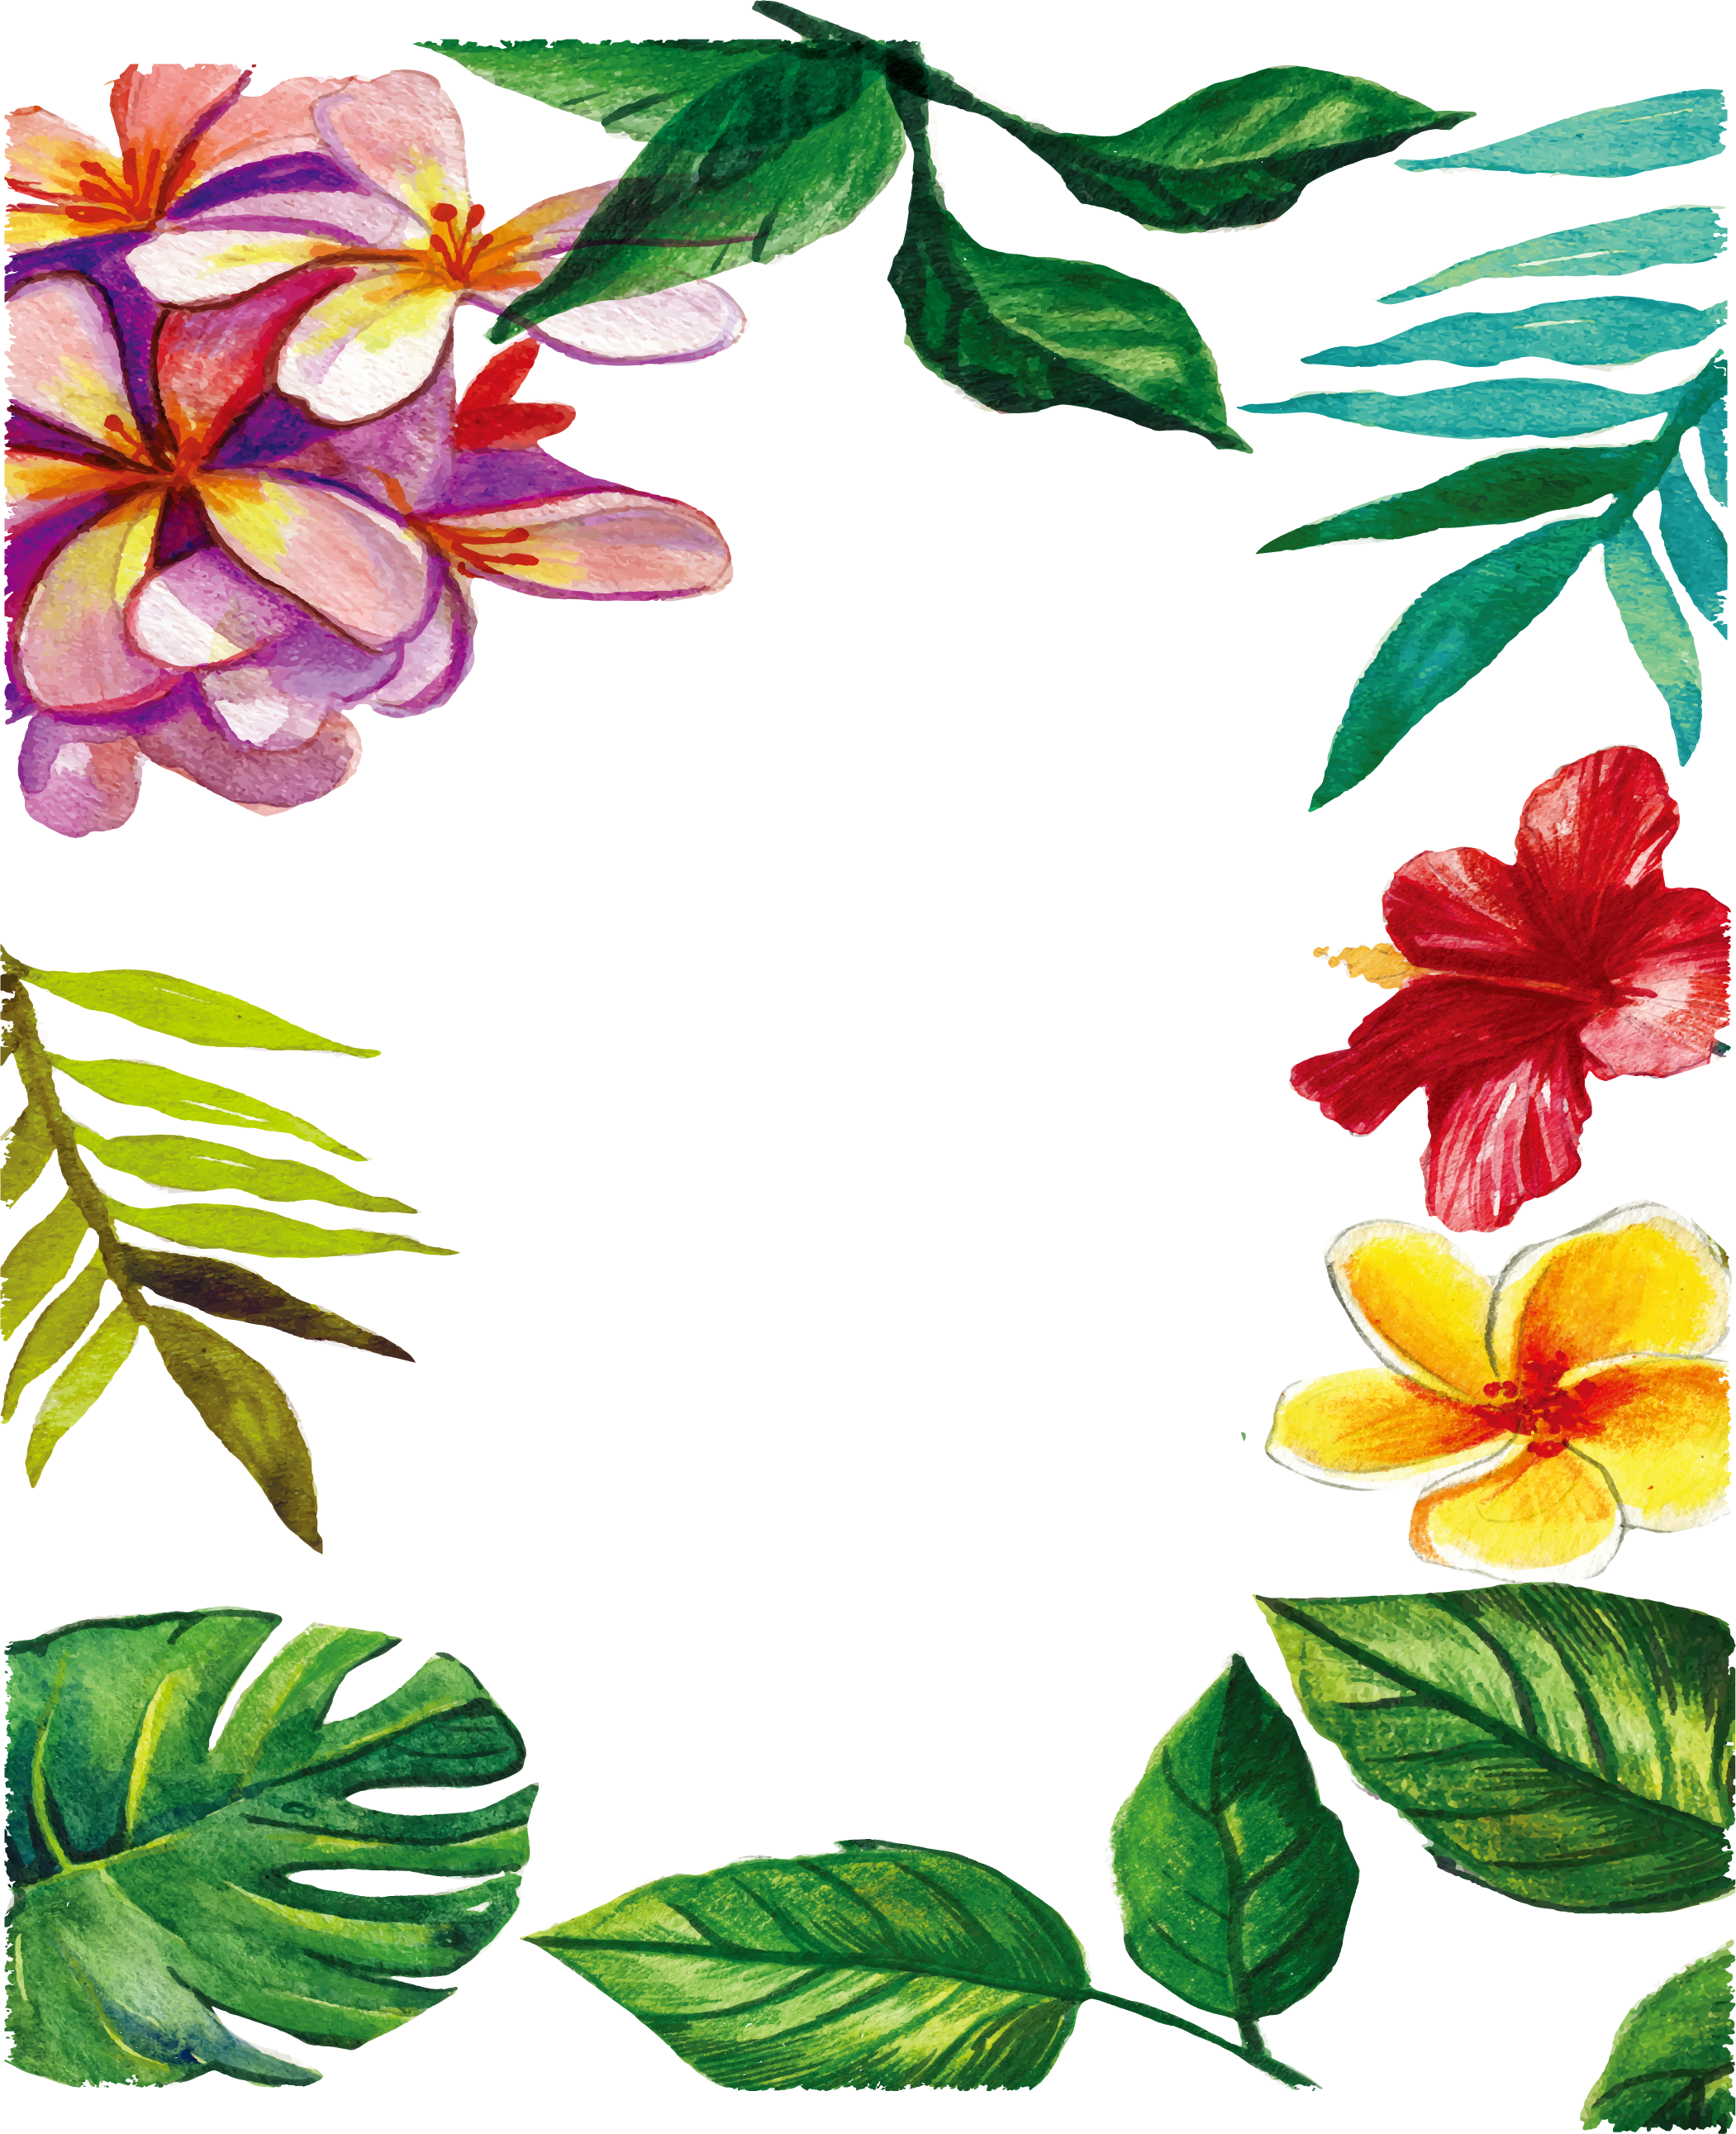 Watercolor Hand-painted Romantic Flowers Leaf Frame - Marco De Flores Y Hojas (2101x2582)